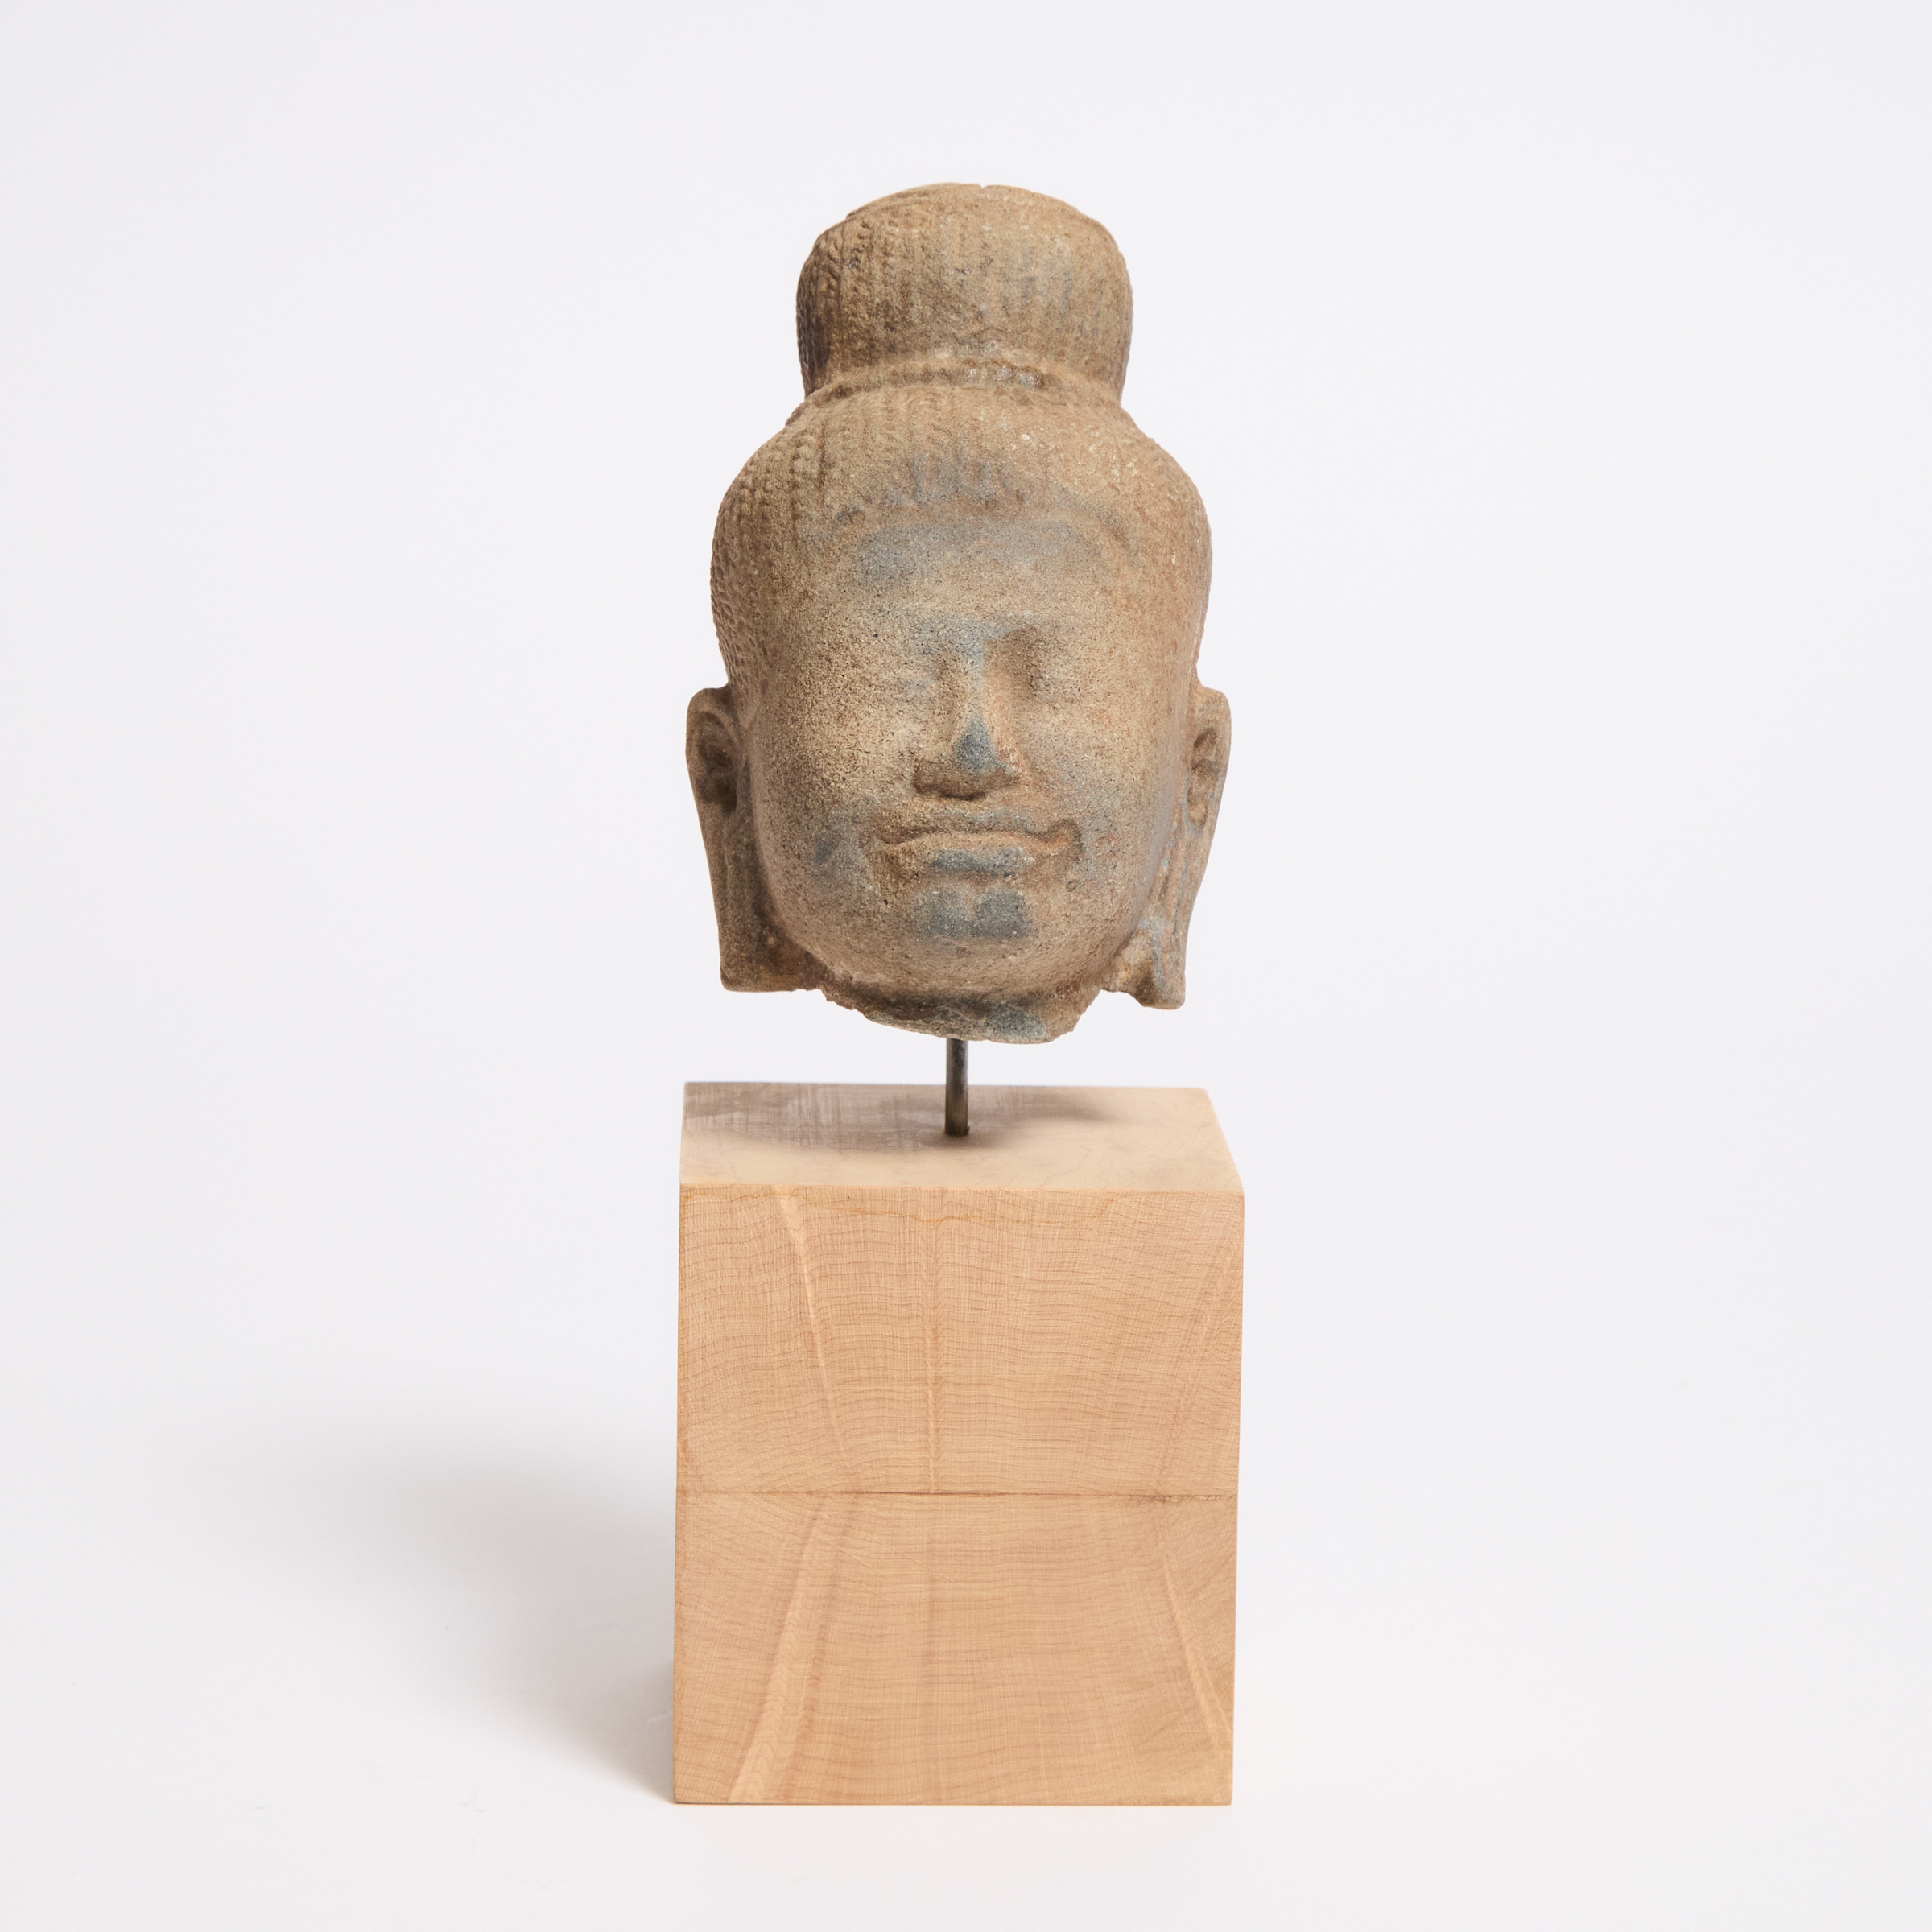 A Khmer Stone Head of Buddha 12th 2fb06f0